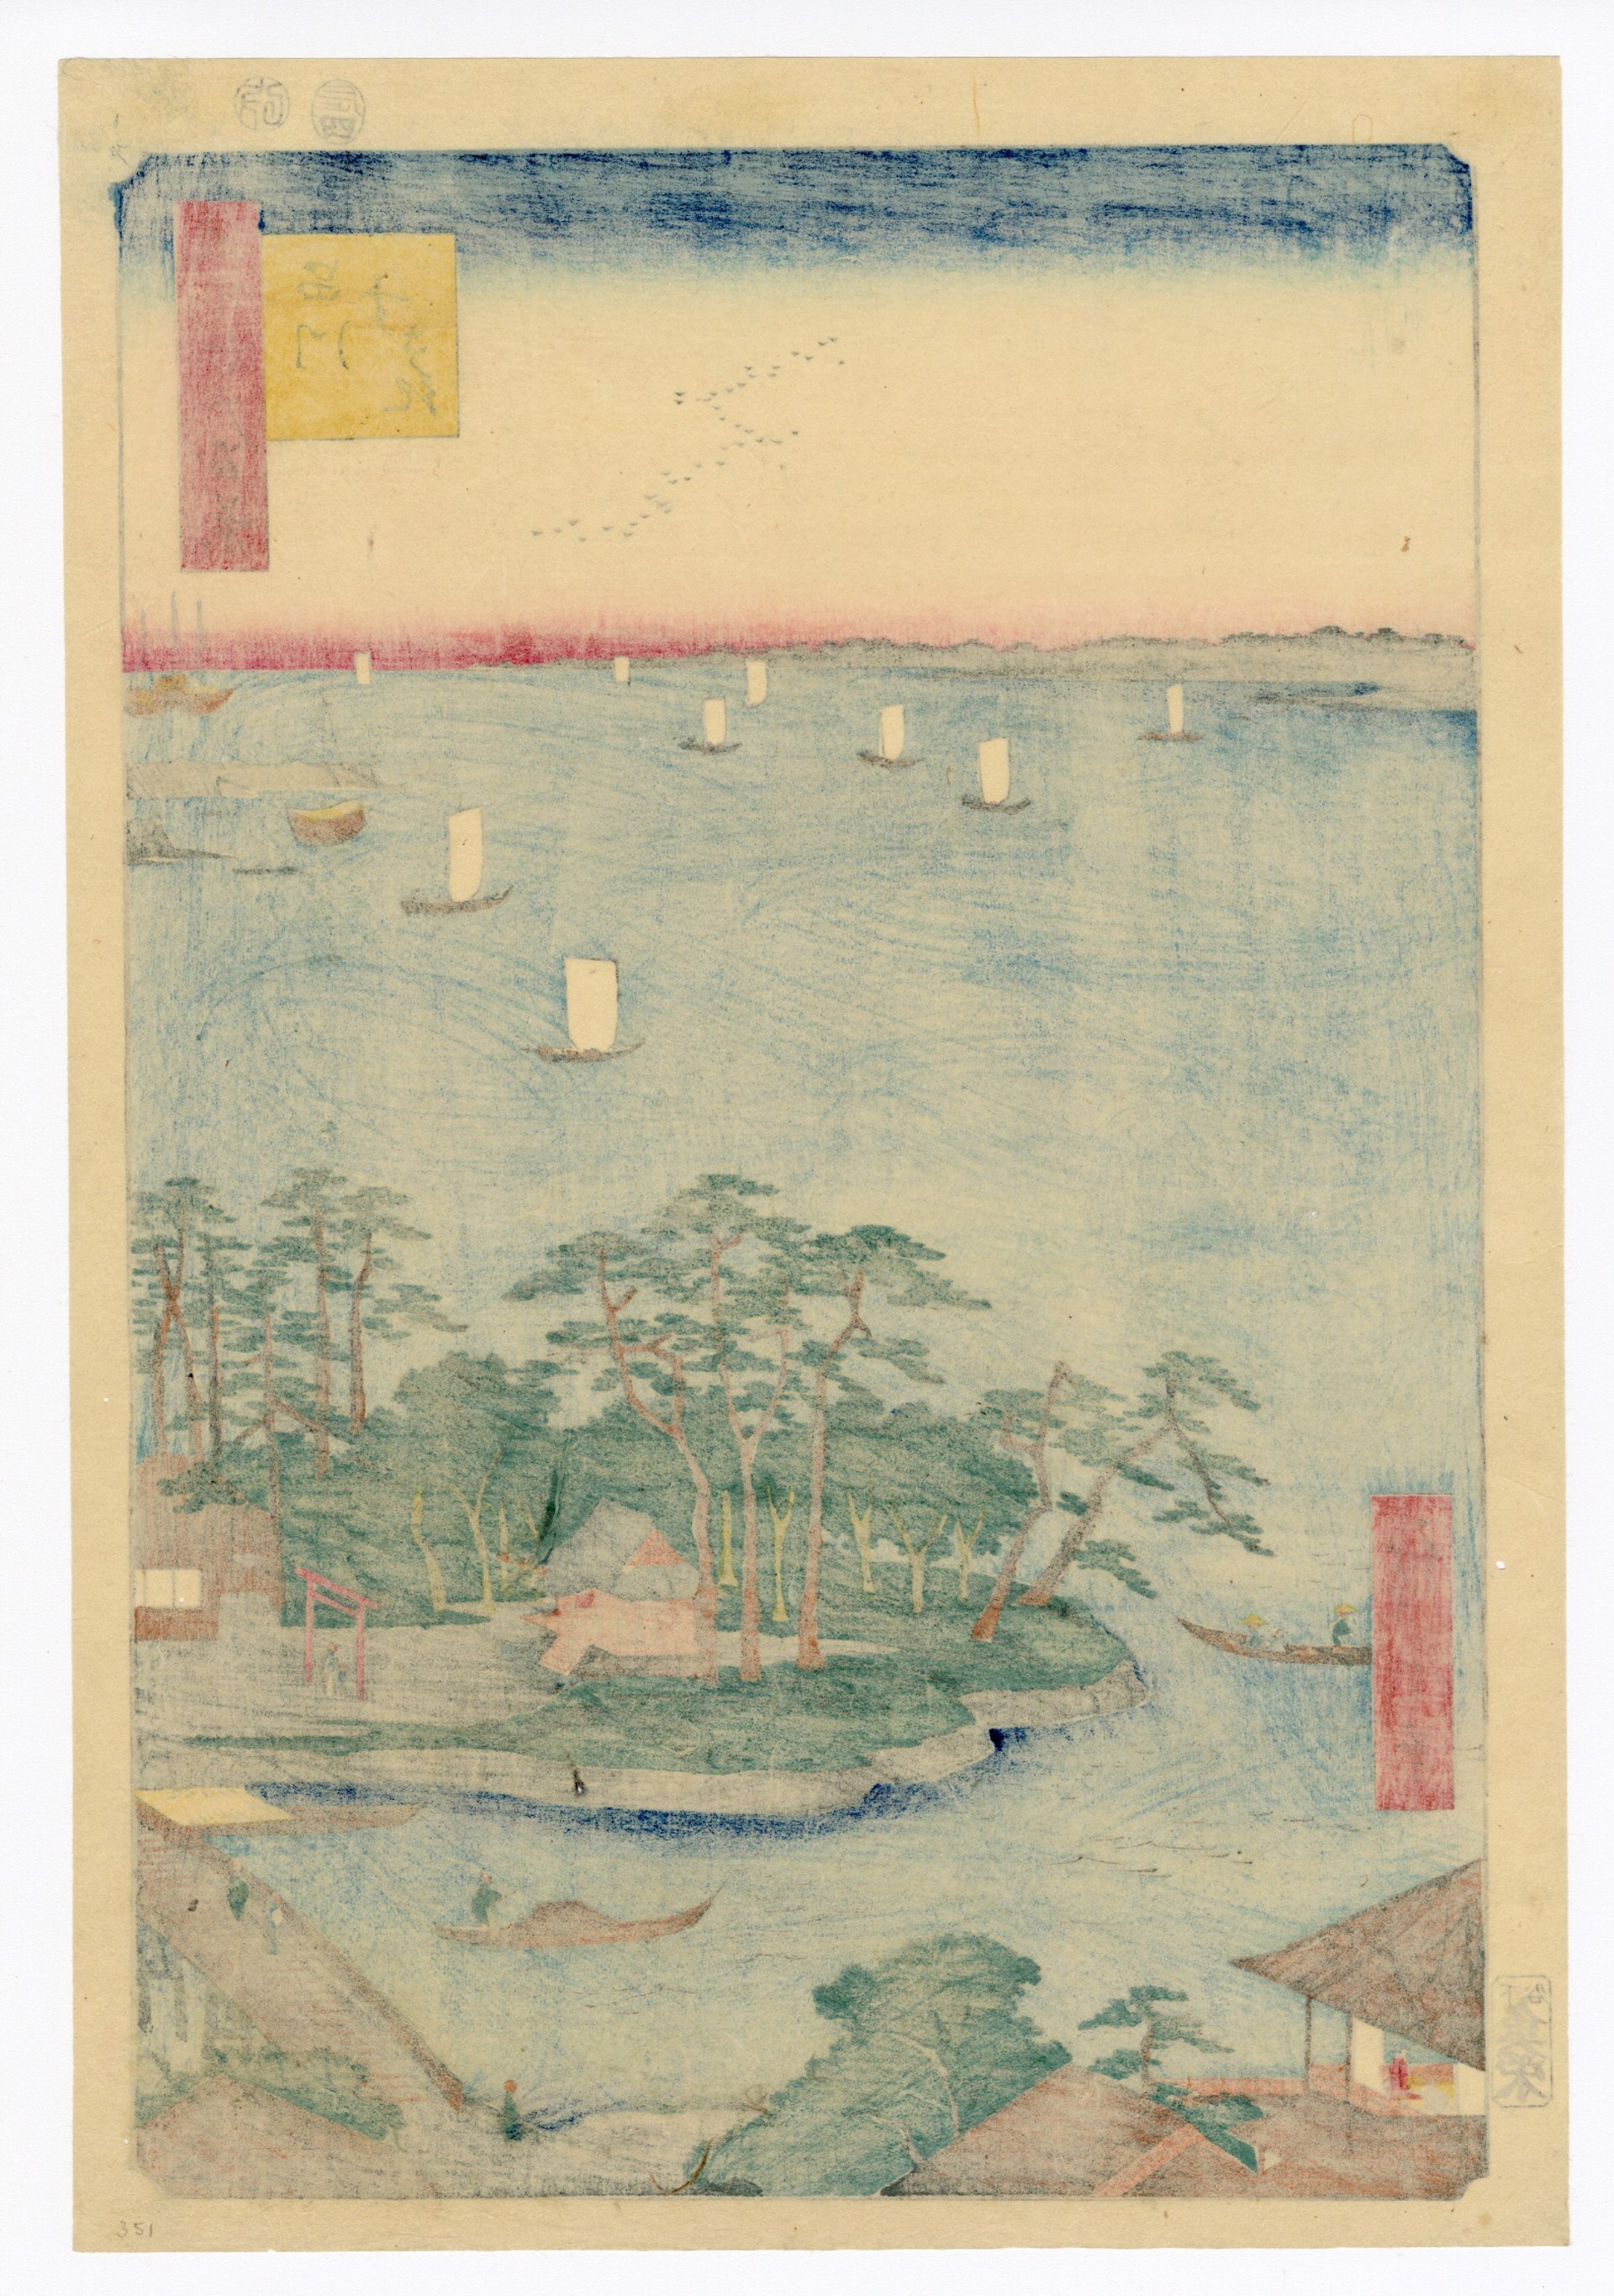 Suzaki Sandbank at Shinagawa by Hiroshige